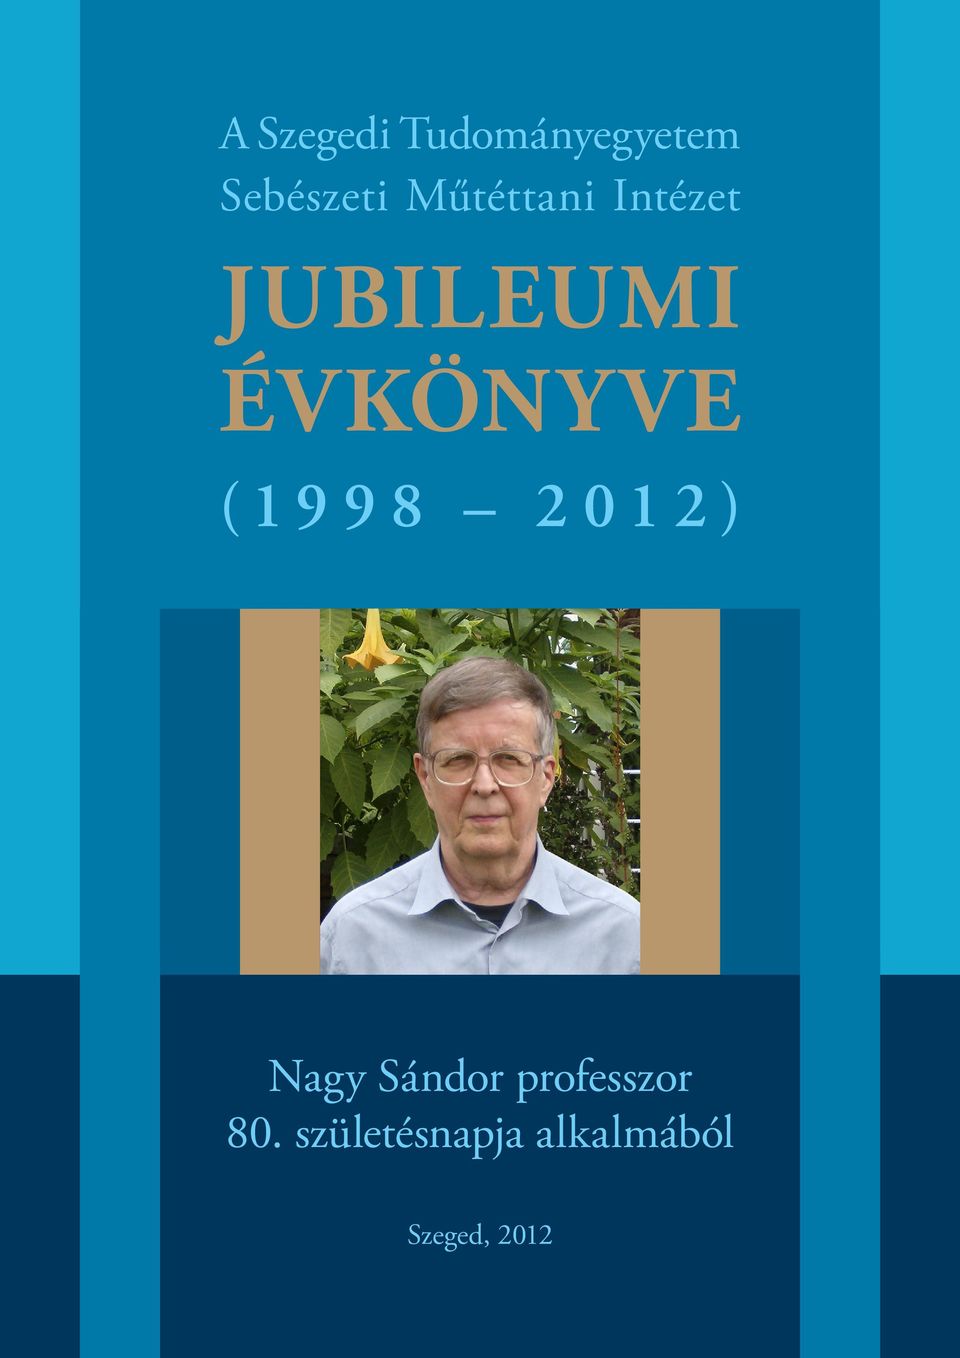 (1998 2012) Nagy Sándor professzor 80.